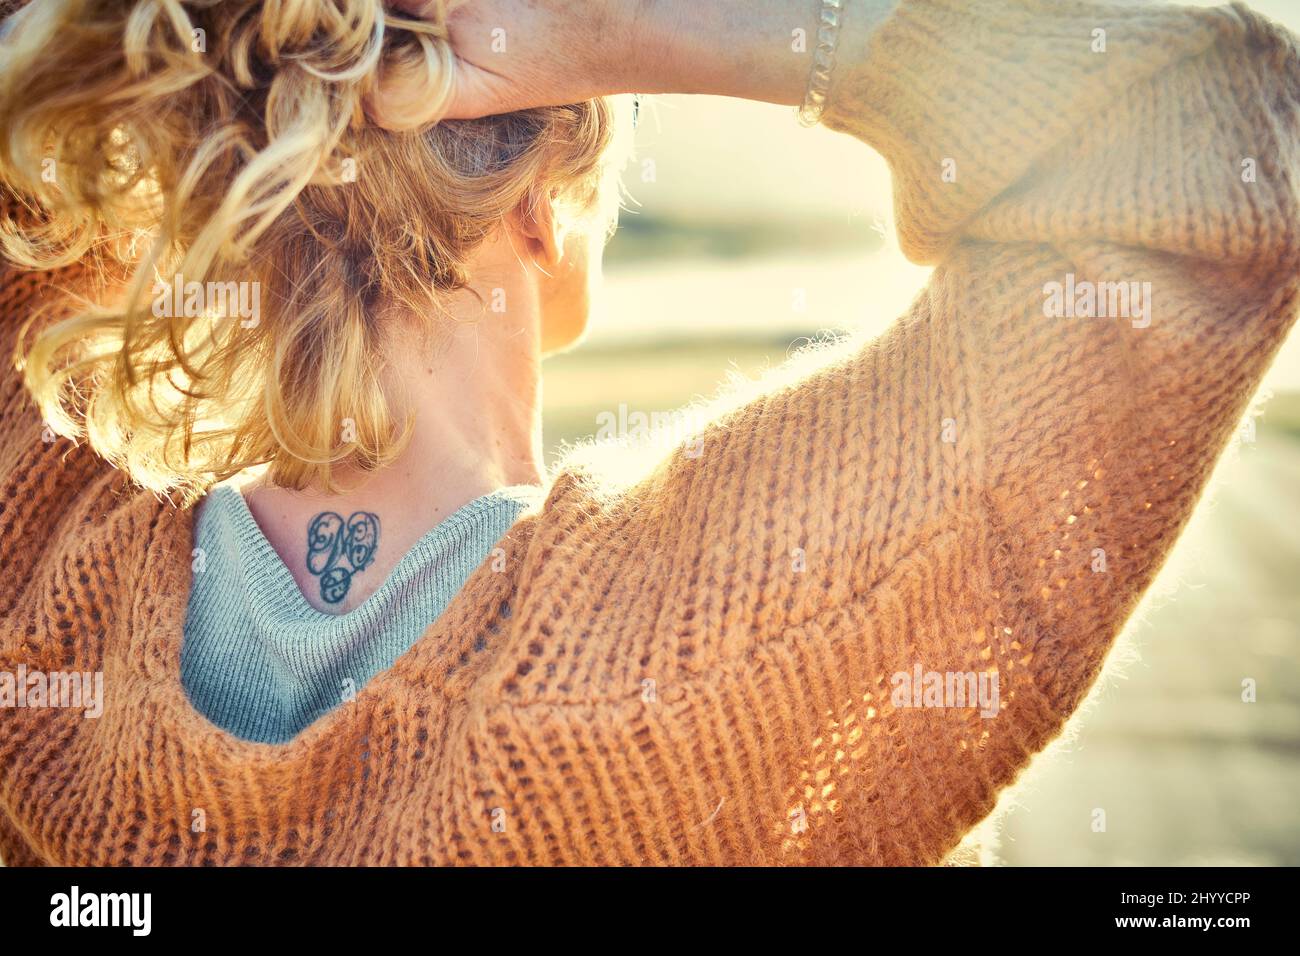 Vue arrière d'une jeune femme blanche blonde avec un tatouage dans est nape à l'extérieur dans un secteur de plage dans une journée ensoleillée. Plage de Berria, Cantabrie, Espagne, Europe. Banque D'Images